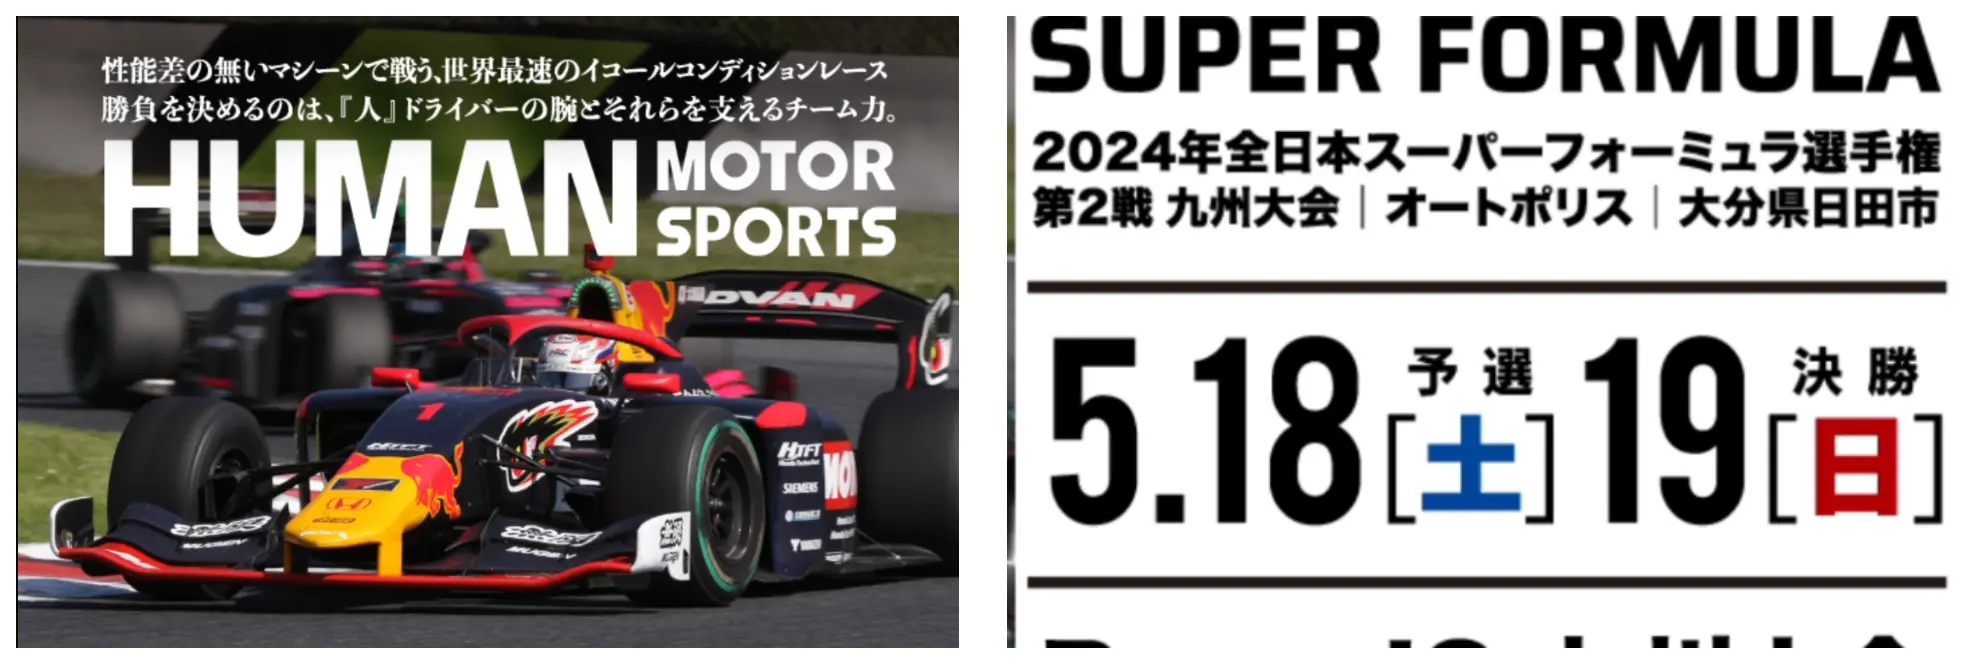 2024年全日本スーパーフォーミュラ選手権第2戦 